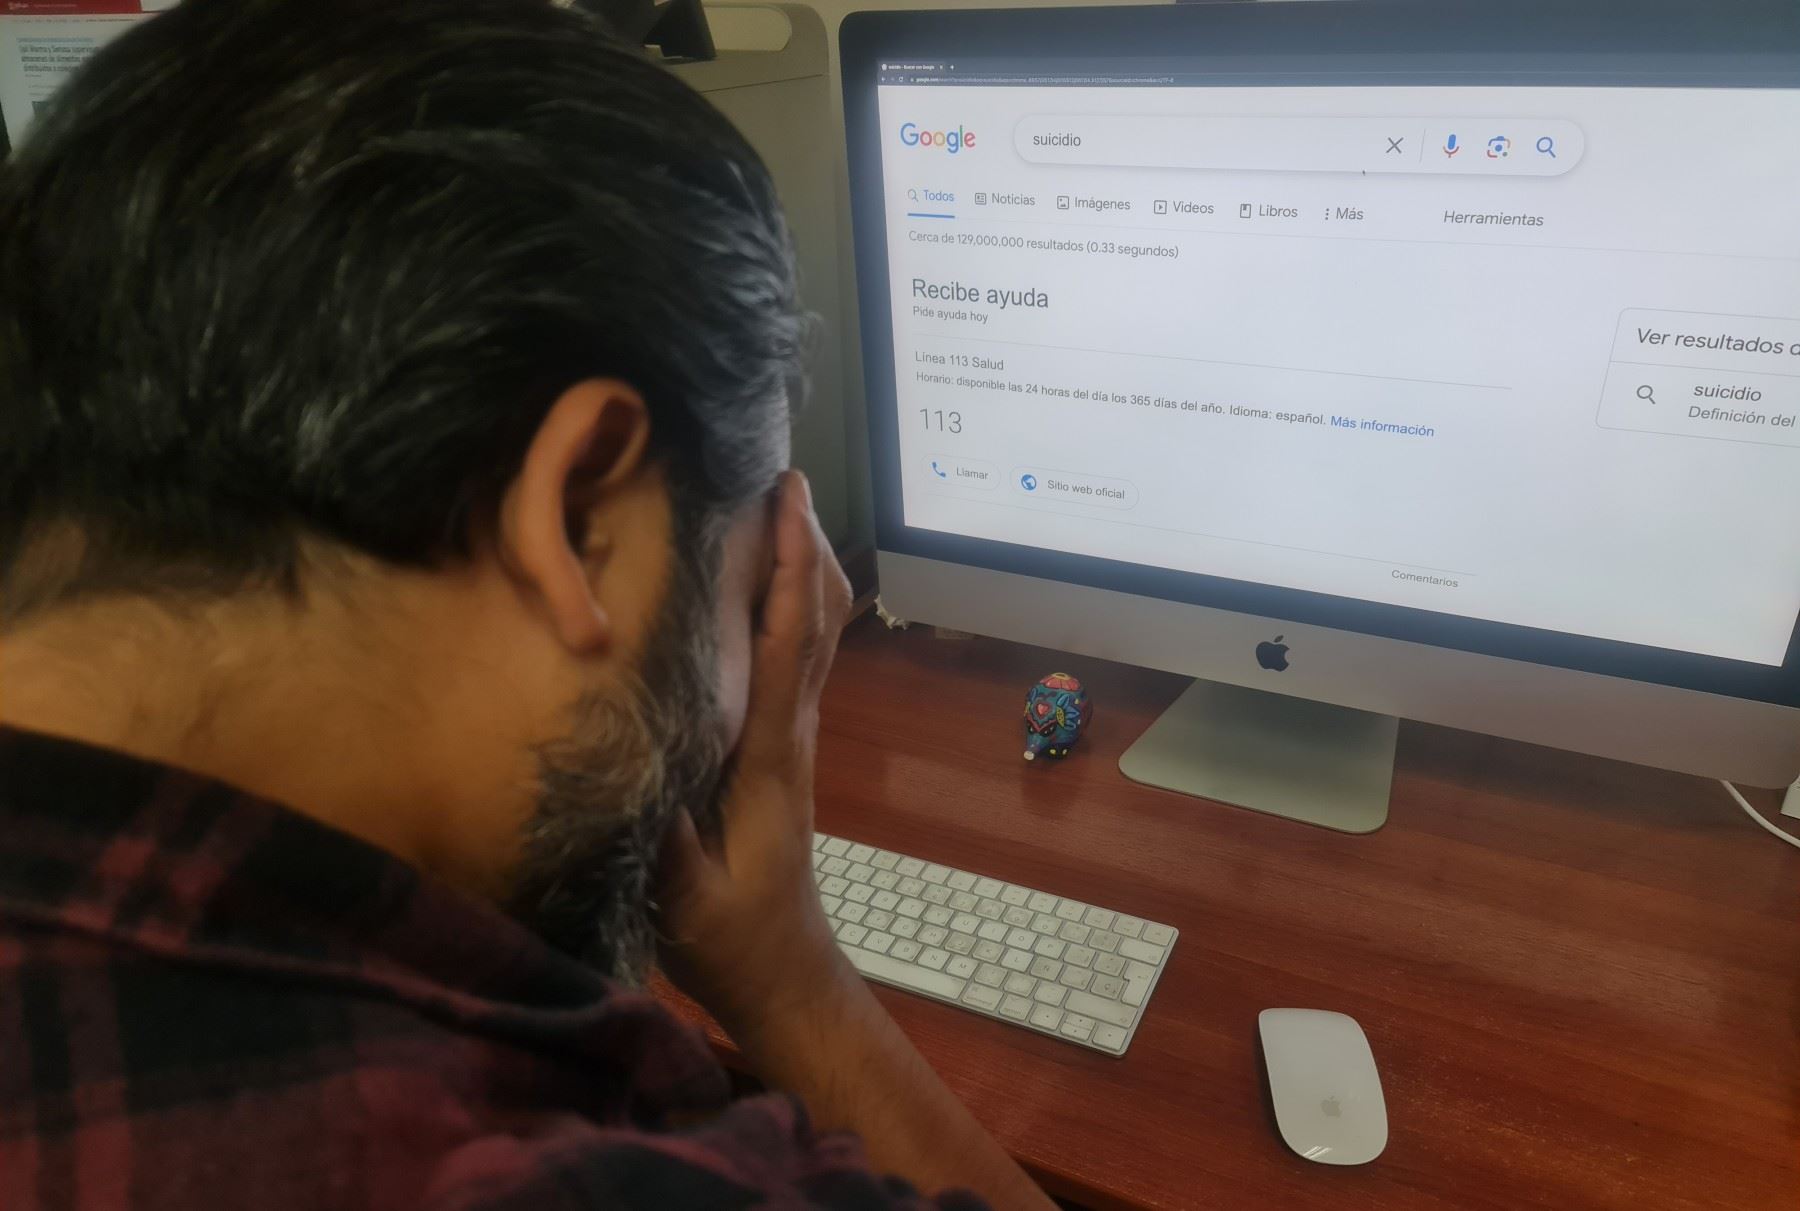 Los usuarios peruanos que consulten el buscador de Google sobre temas que evidencien vulnerabilidad en su salud mental recibirán una notificación para recibir ayuda. Foto: ANDINA